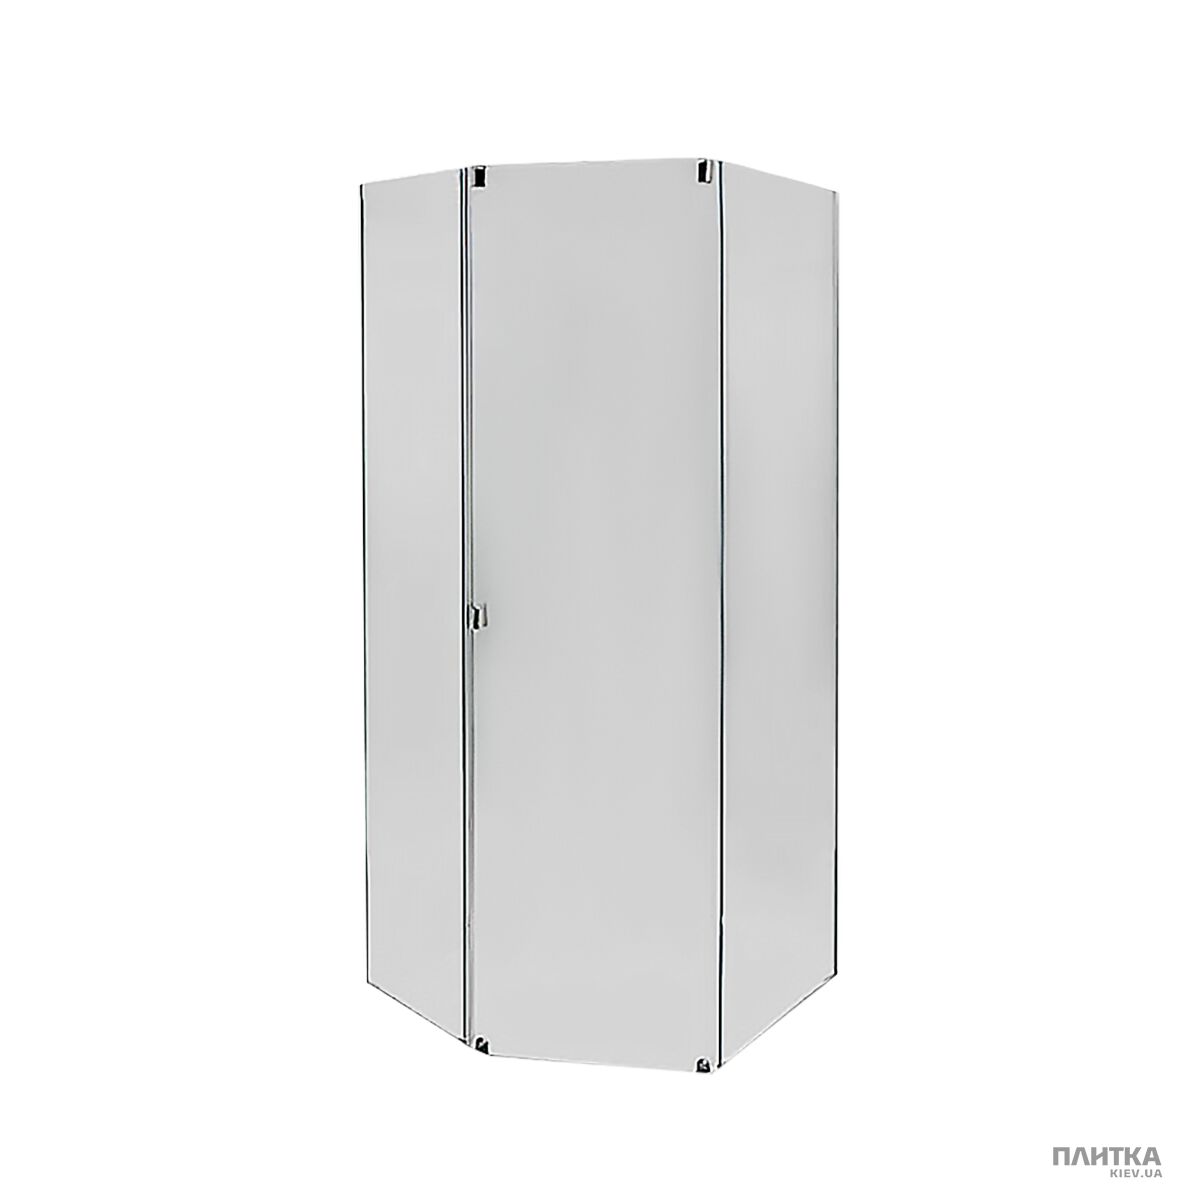 Комплектуючі: IDO Showerama 8-5 49851-13-012 Передні стінки та двері душової кабіни, фронтальна панель срібна срібло